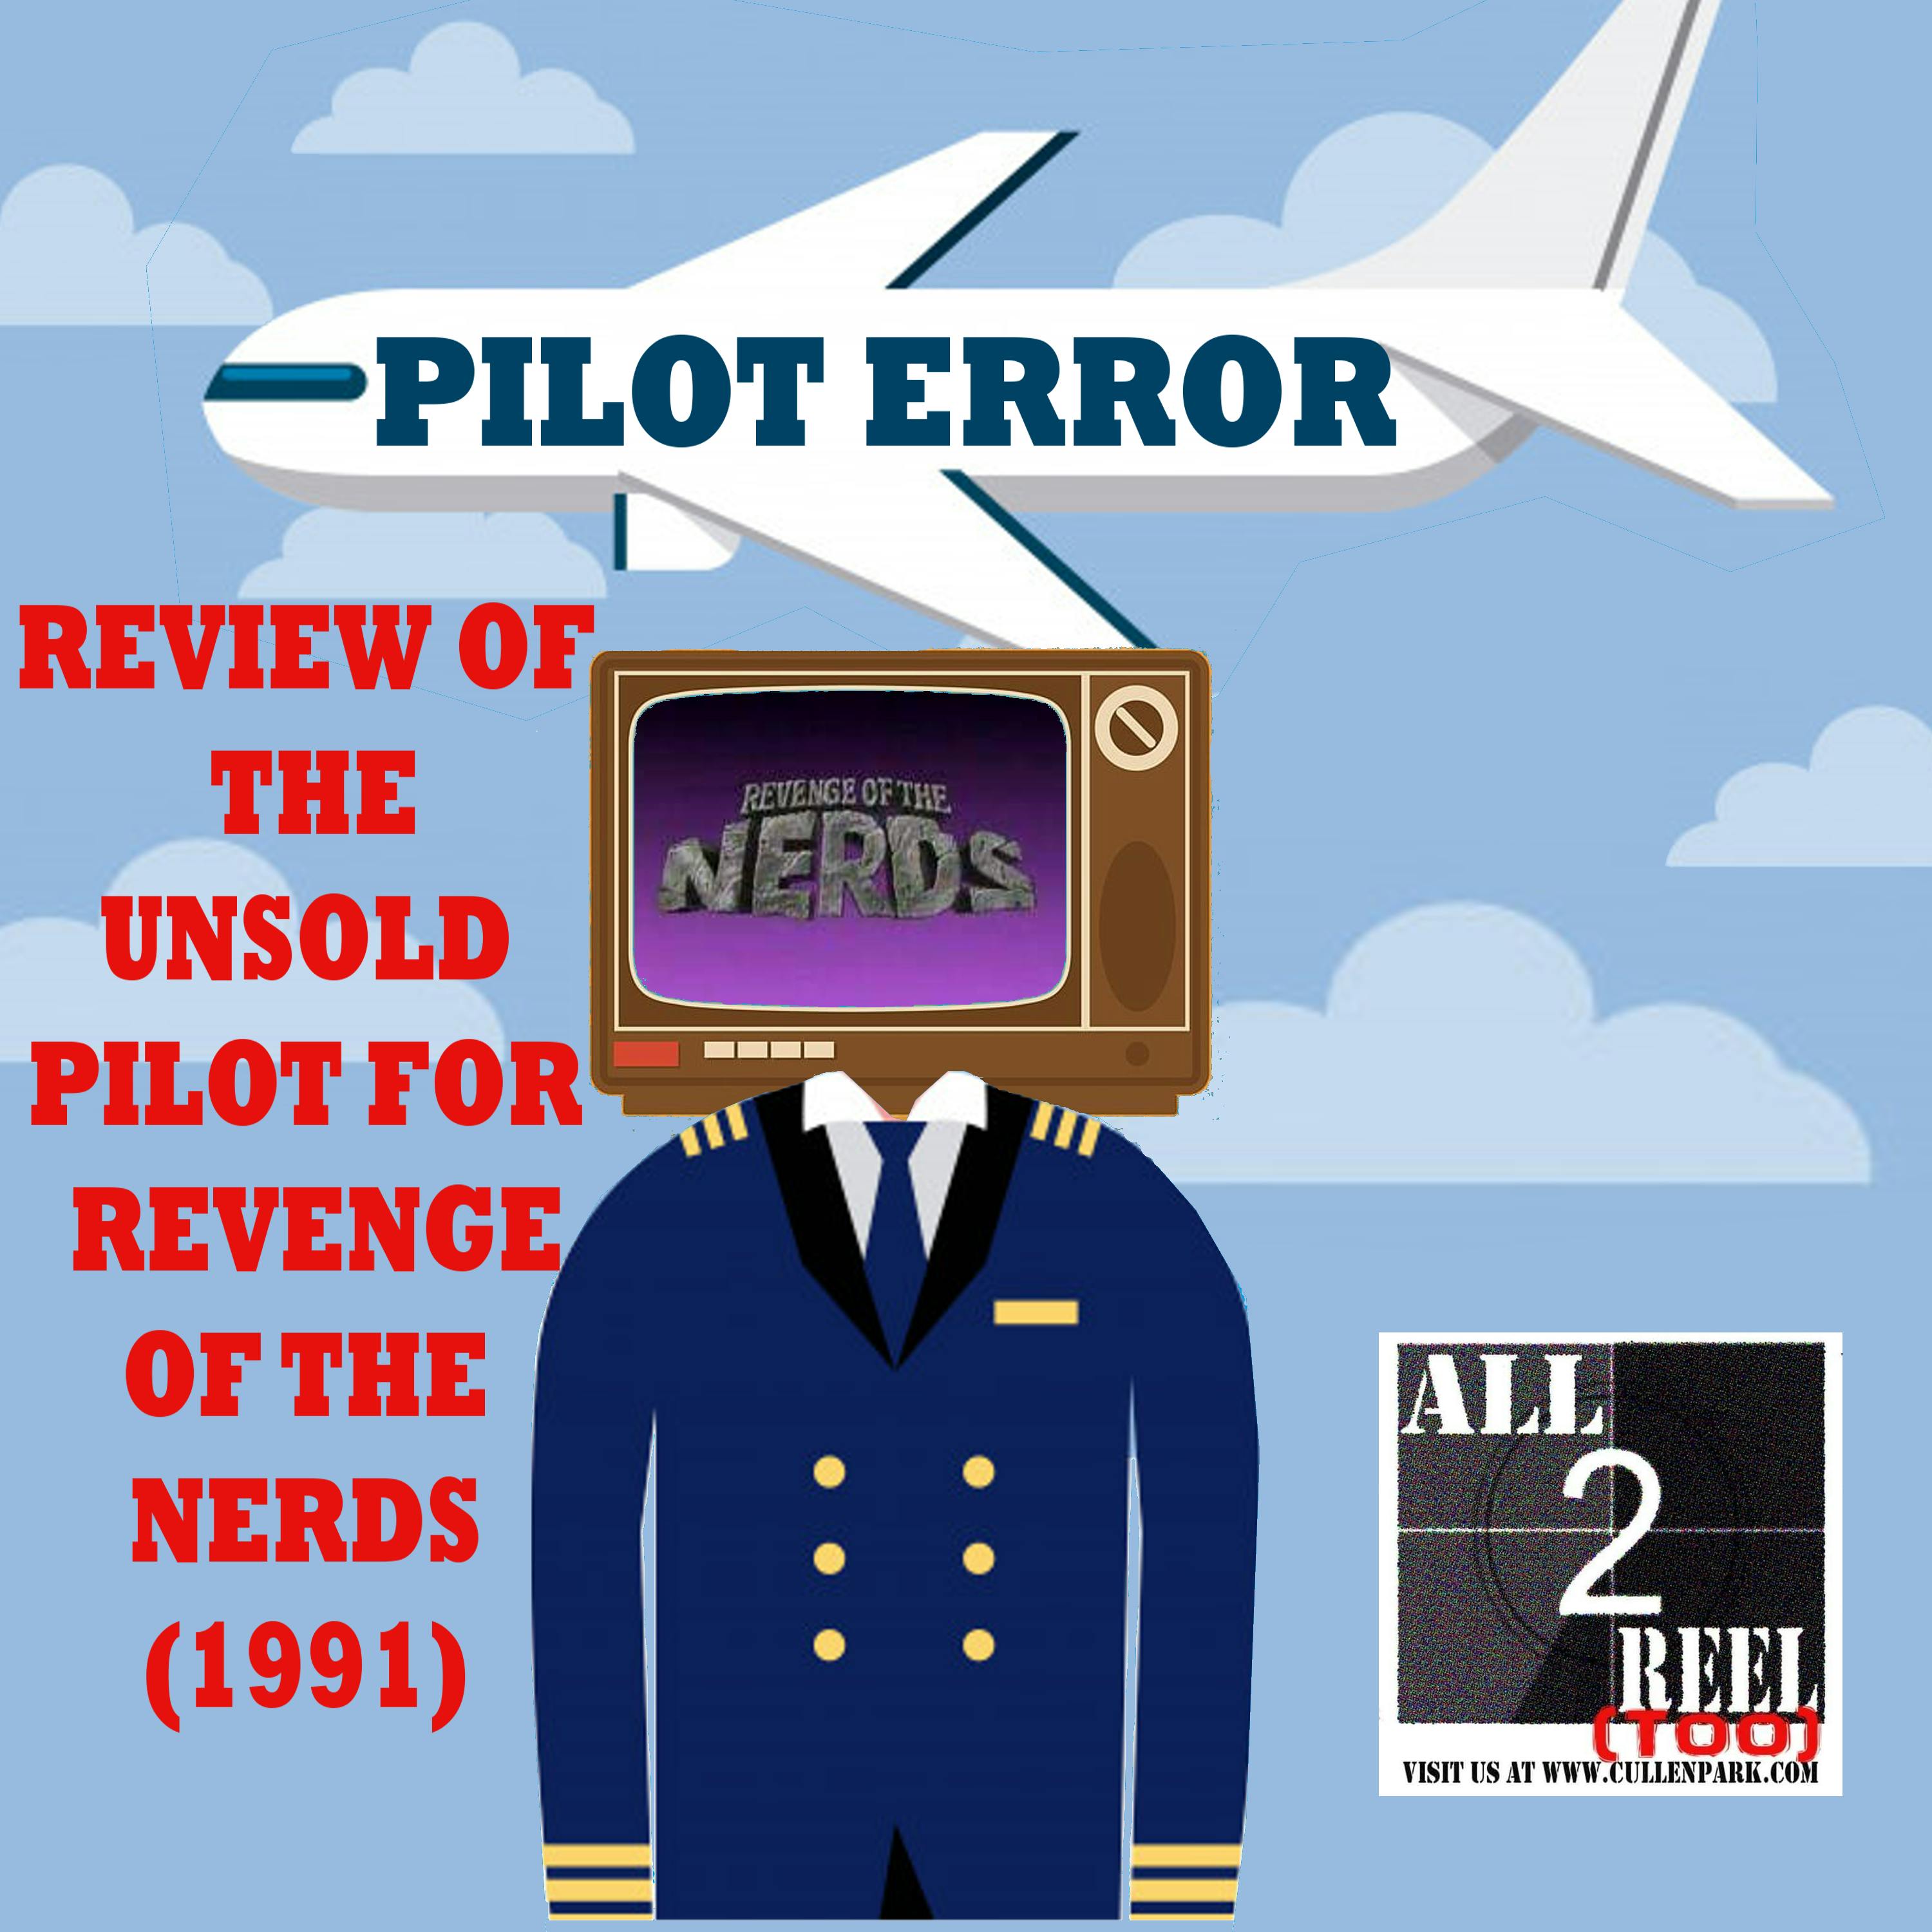 REVENGE OF THE NERDS (1991) - PILOT ERROR REVIEW